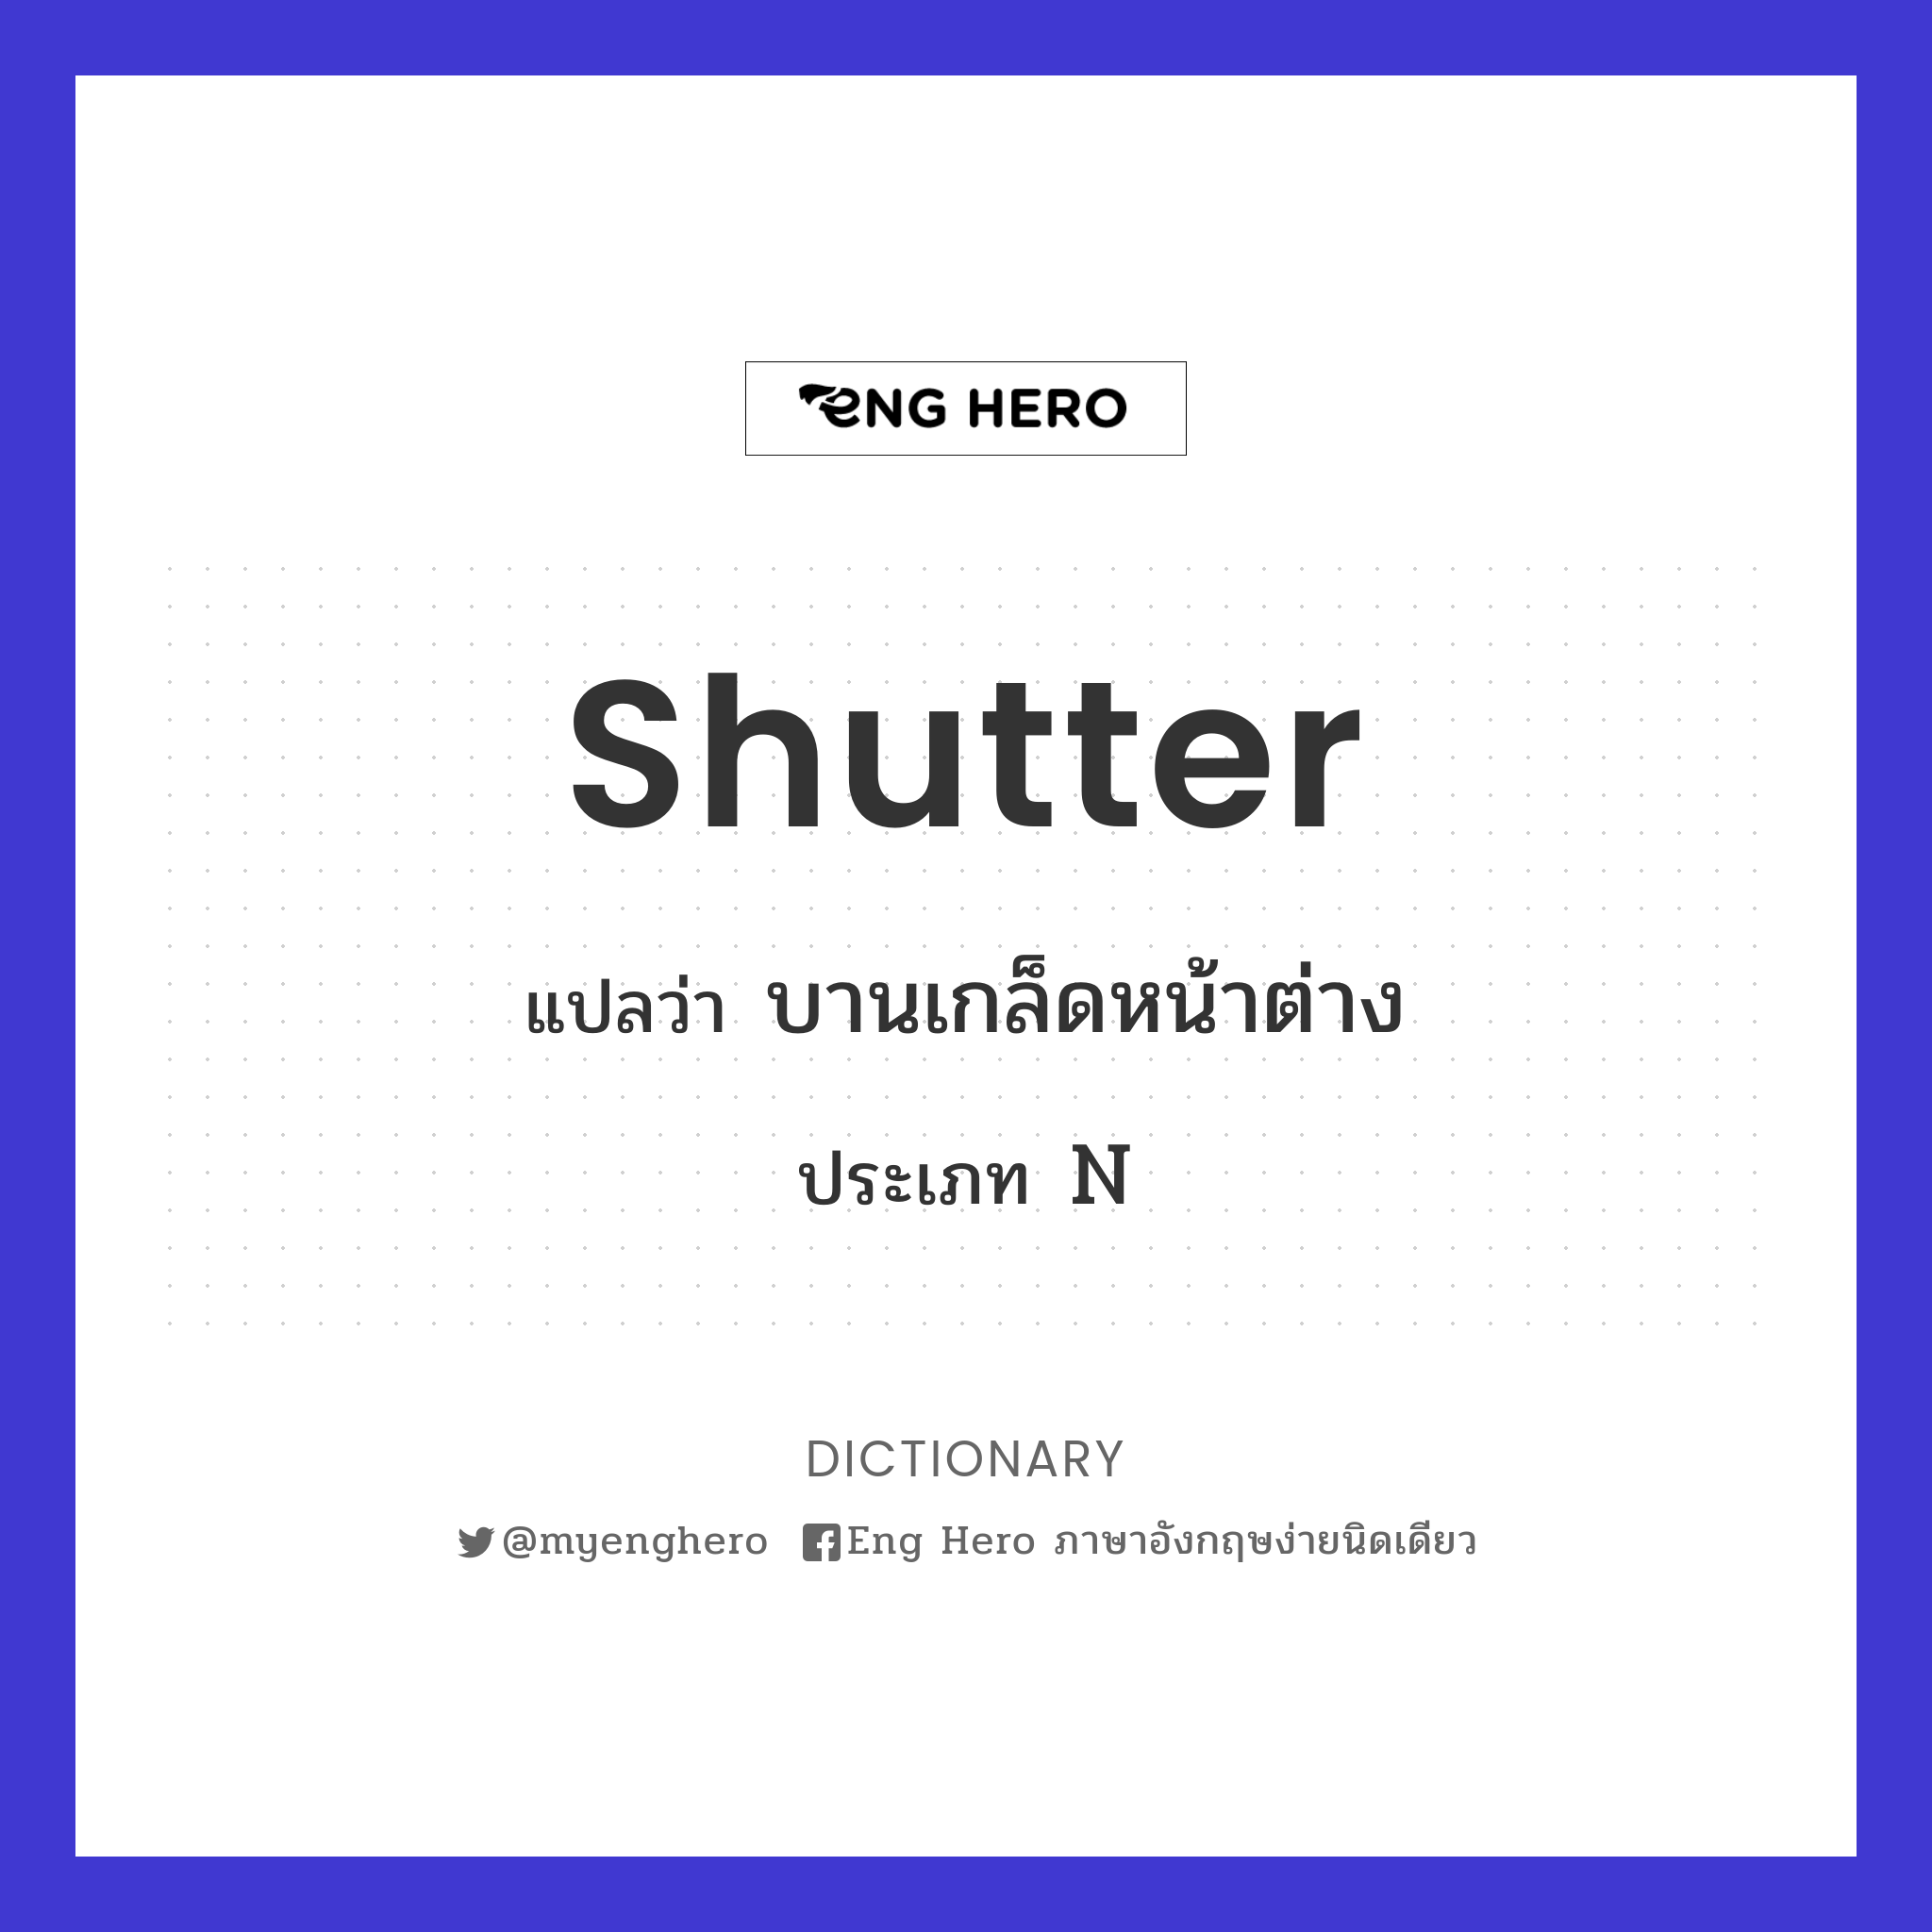 shutter